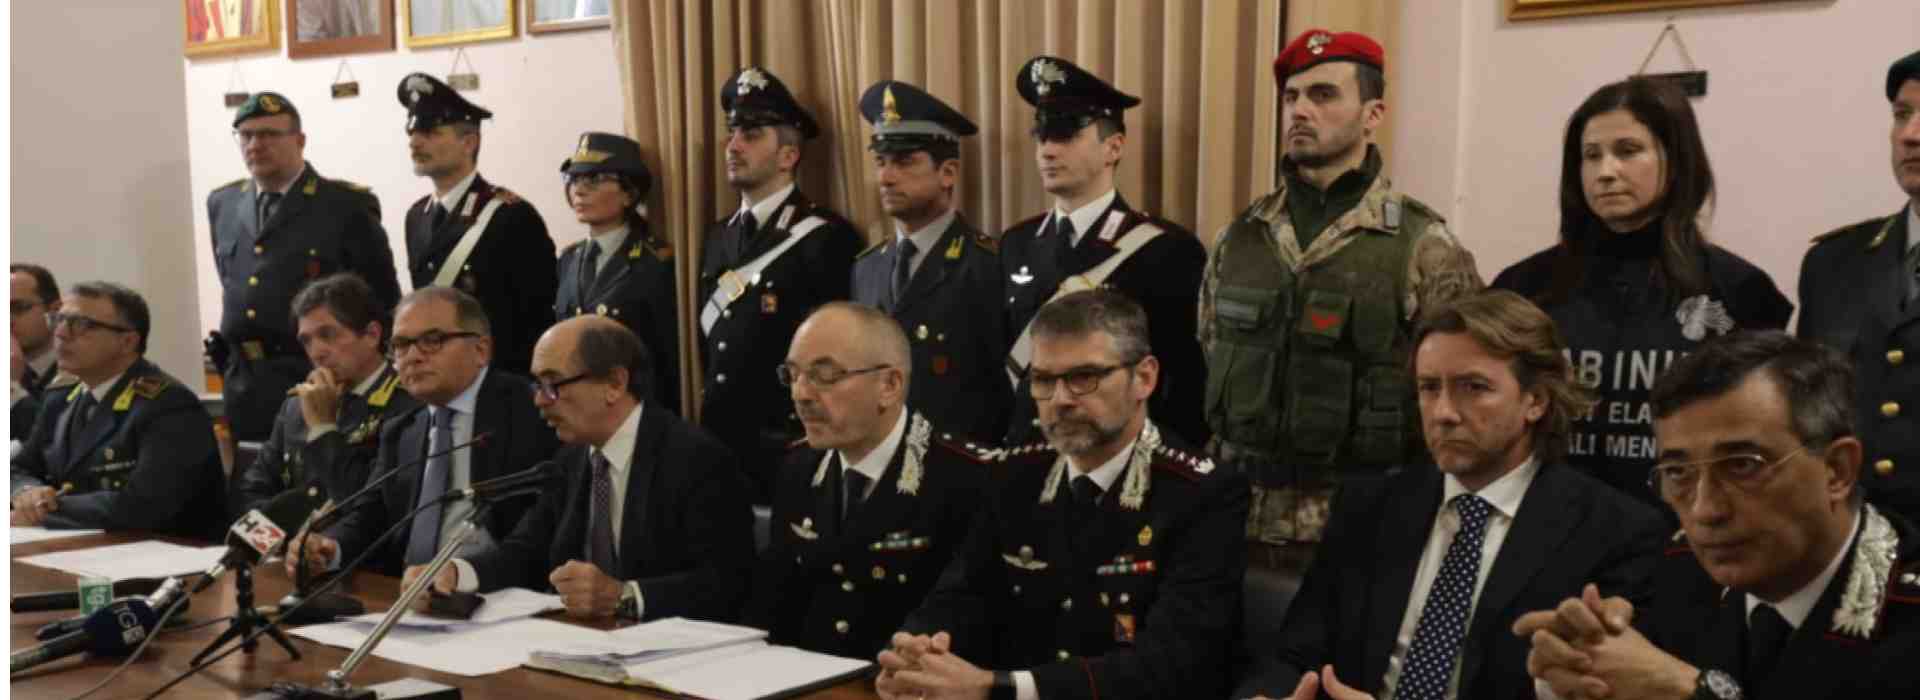 Nebrodi: al processo per mafia il ministero non si presenta come parte civile